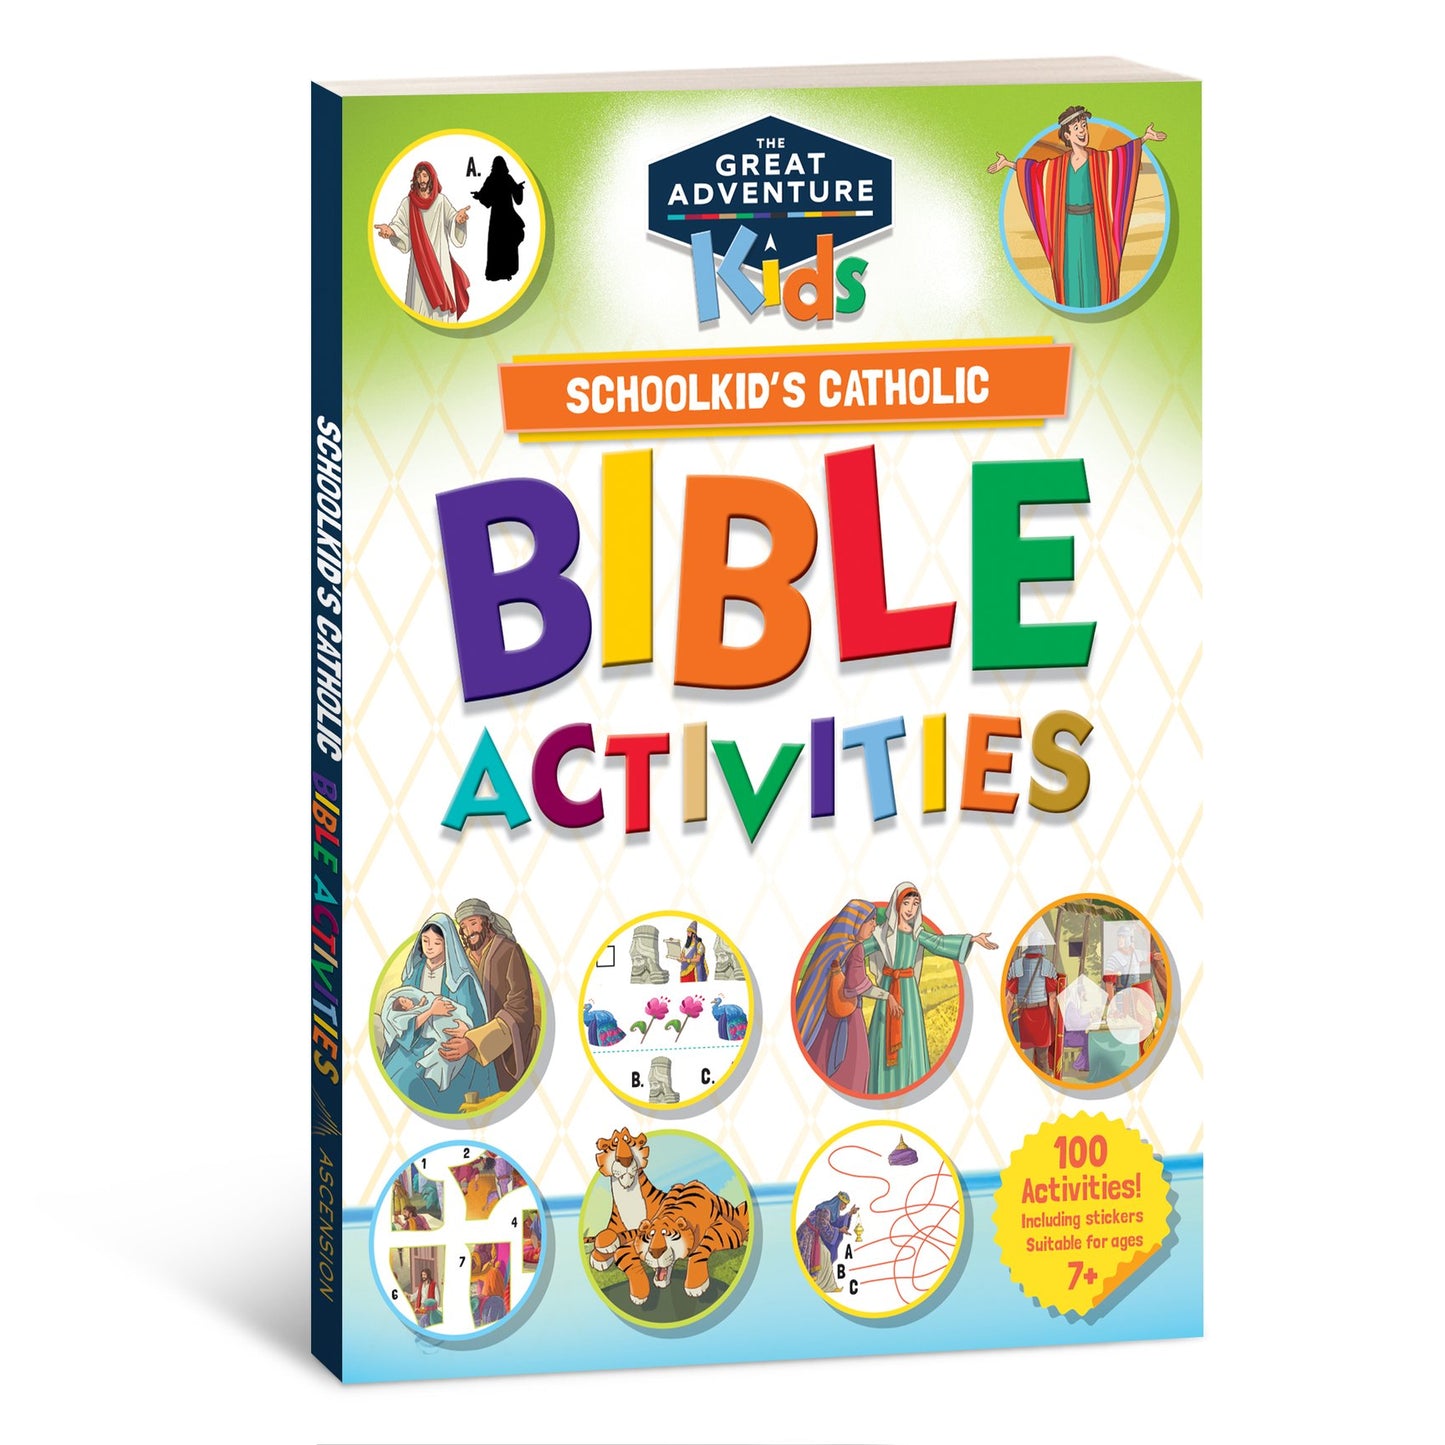 Great Adventure Kids Bible Activities